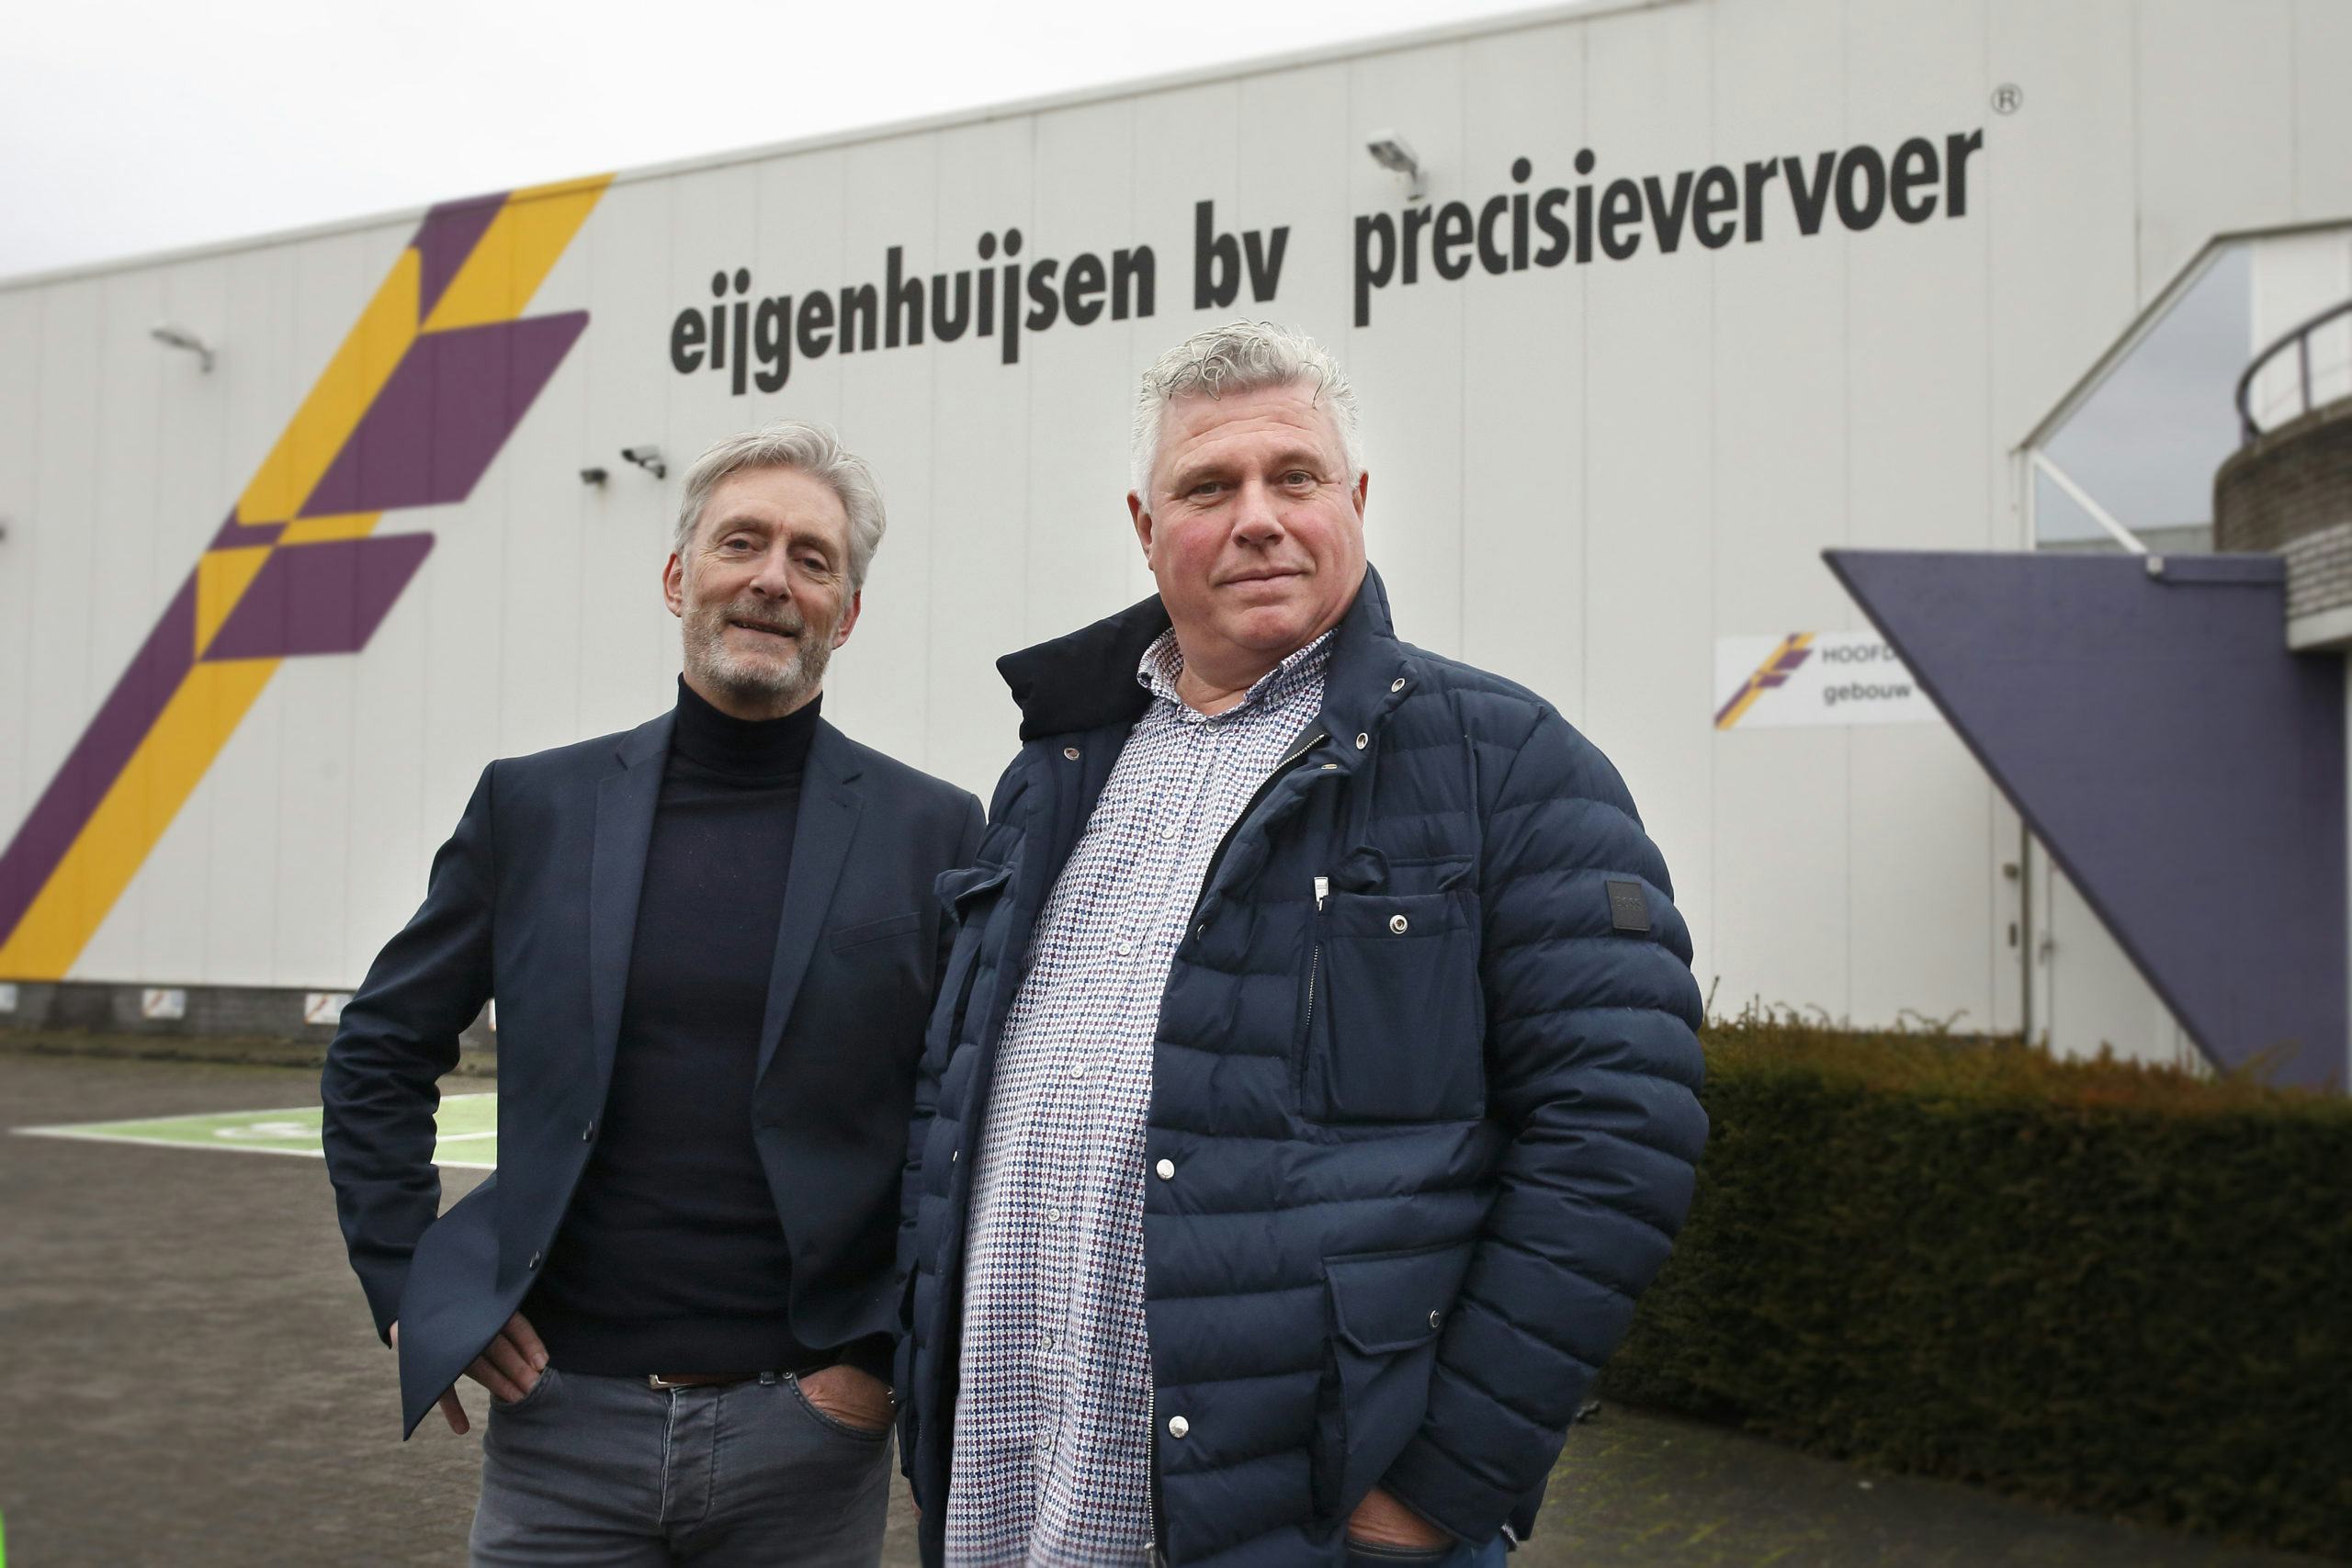 Willem Eijgenhuijsen en Jan Woudsma. Foto: Hans Prinsen